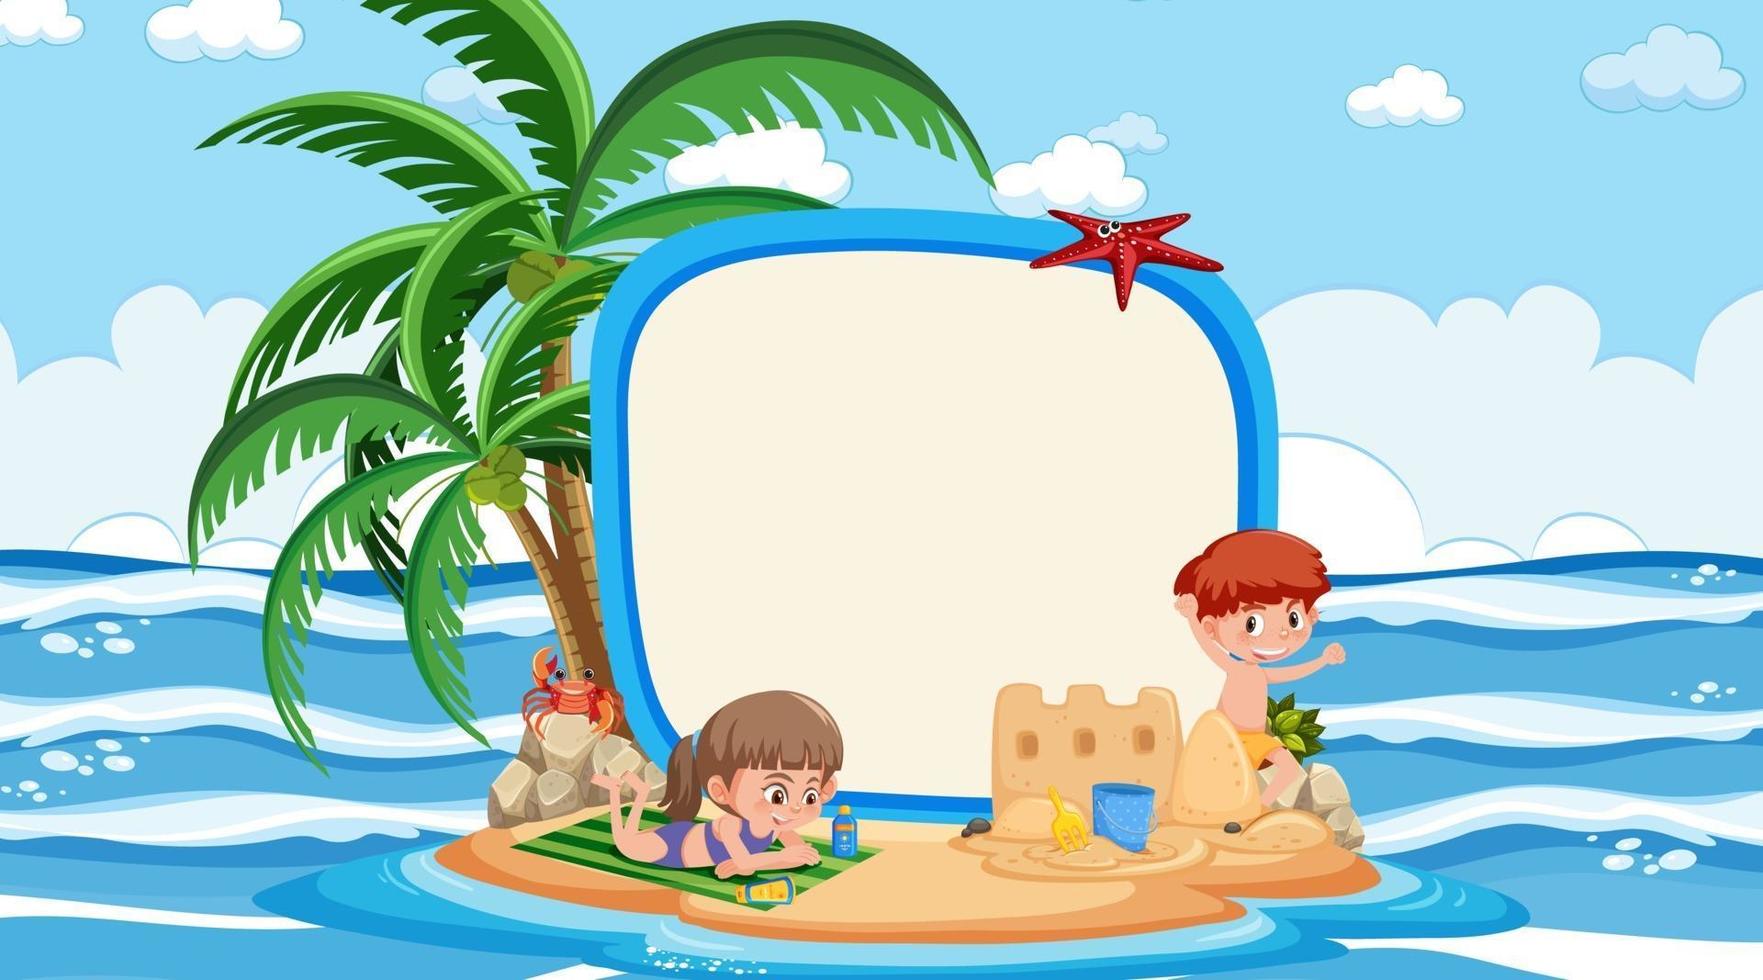 modelo de banner vazio com crianças de férias na praia durante o dia vetor